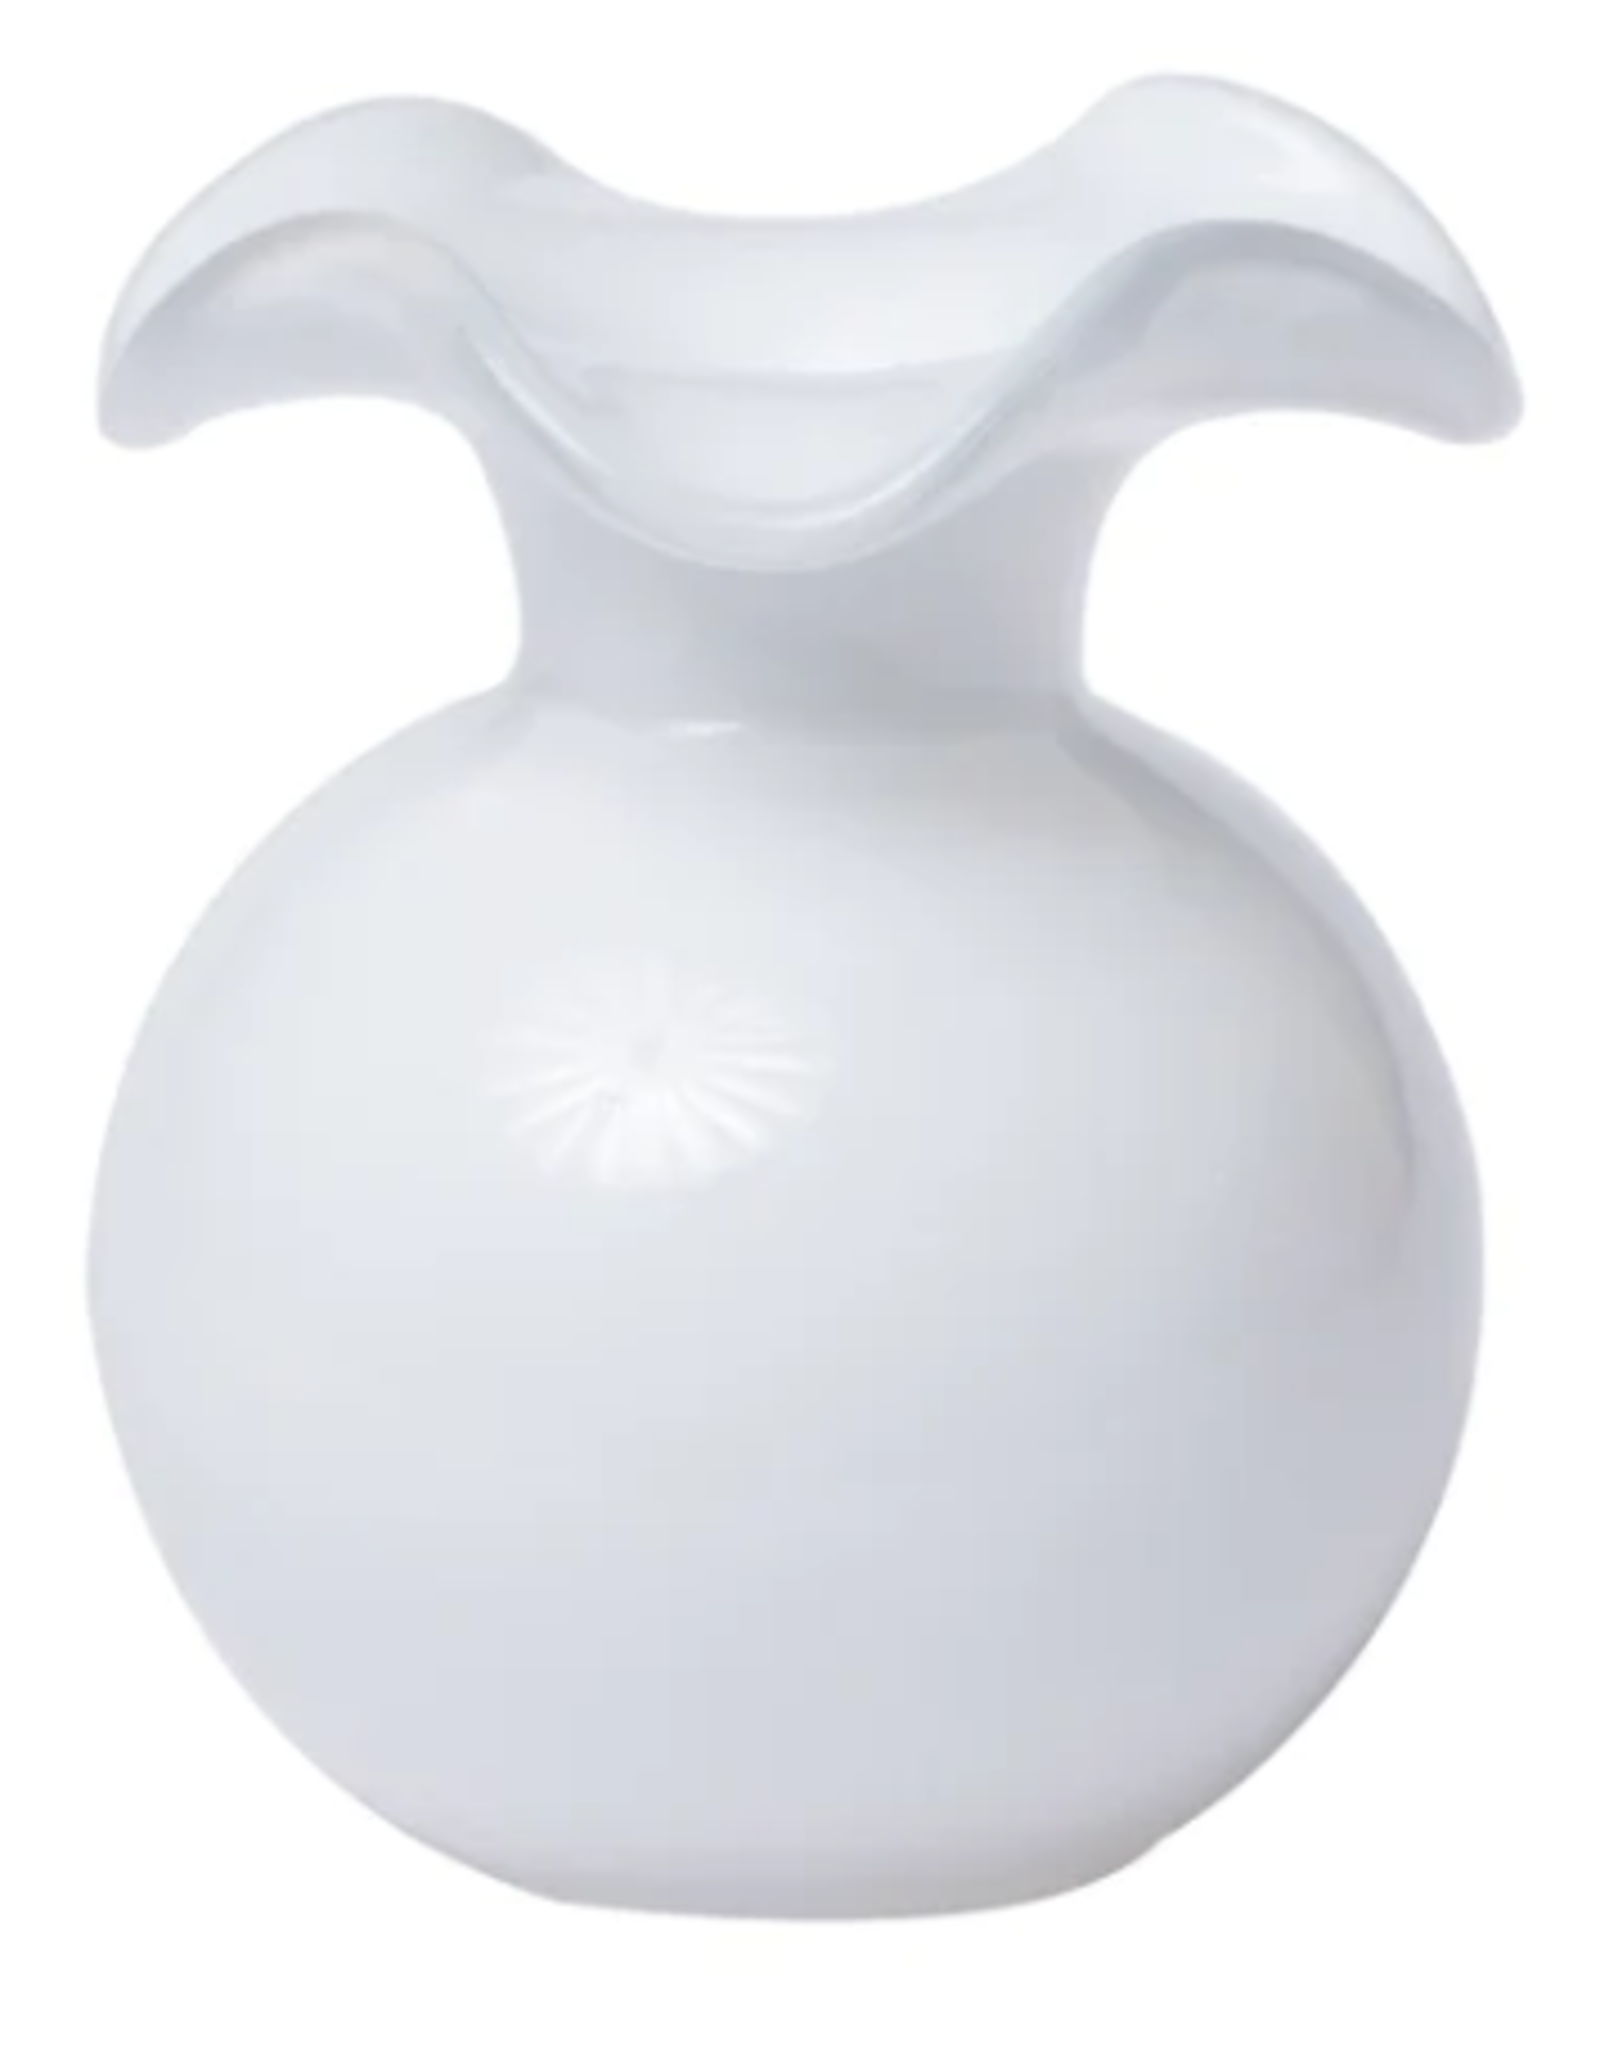 Vietri Hibiscus Glass White Vase